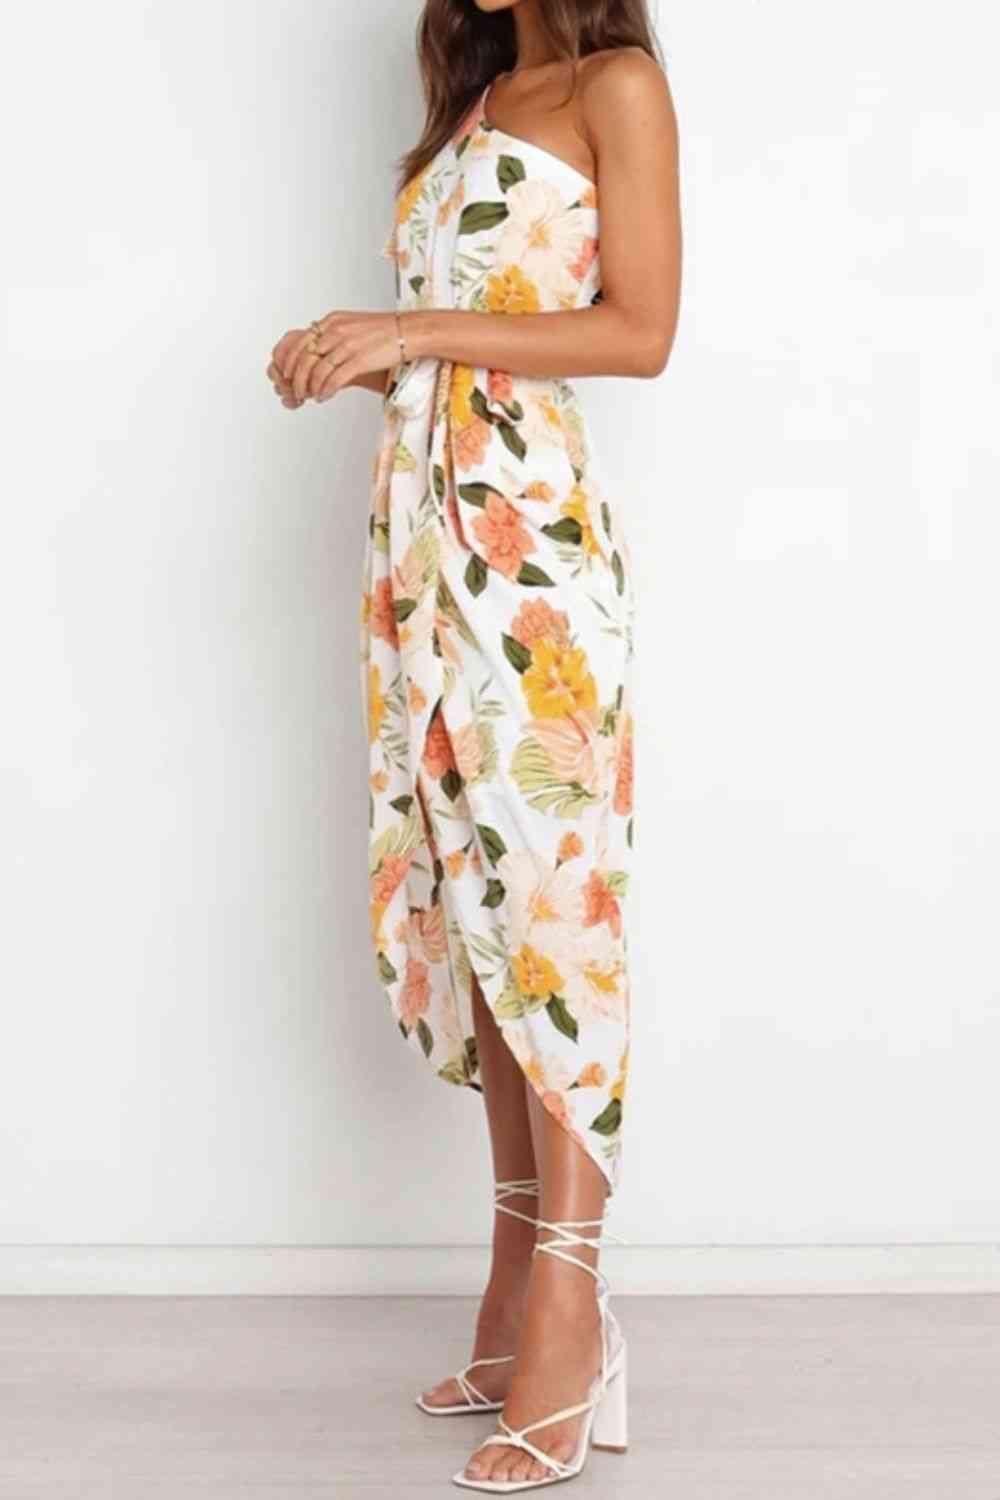 a woman wearing a floral print dress